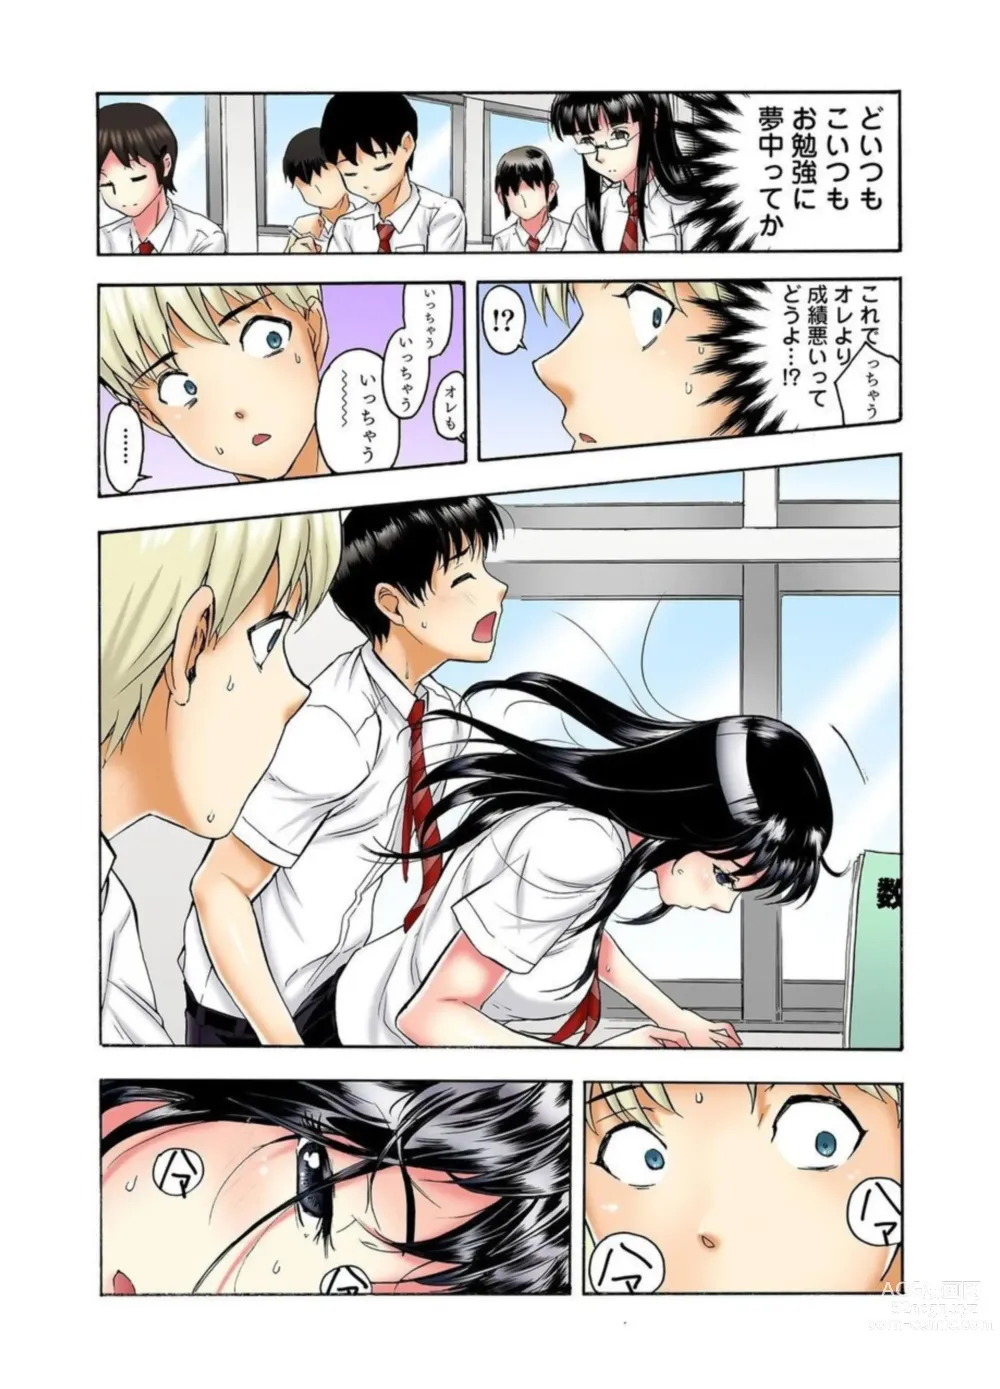 Page 7 of manga Tenkousei no Seki ga Ore no Hiza no Ue ni Kimatta no de Hame Temita Dai 2-bu 1-2